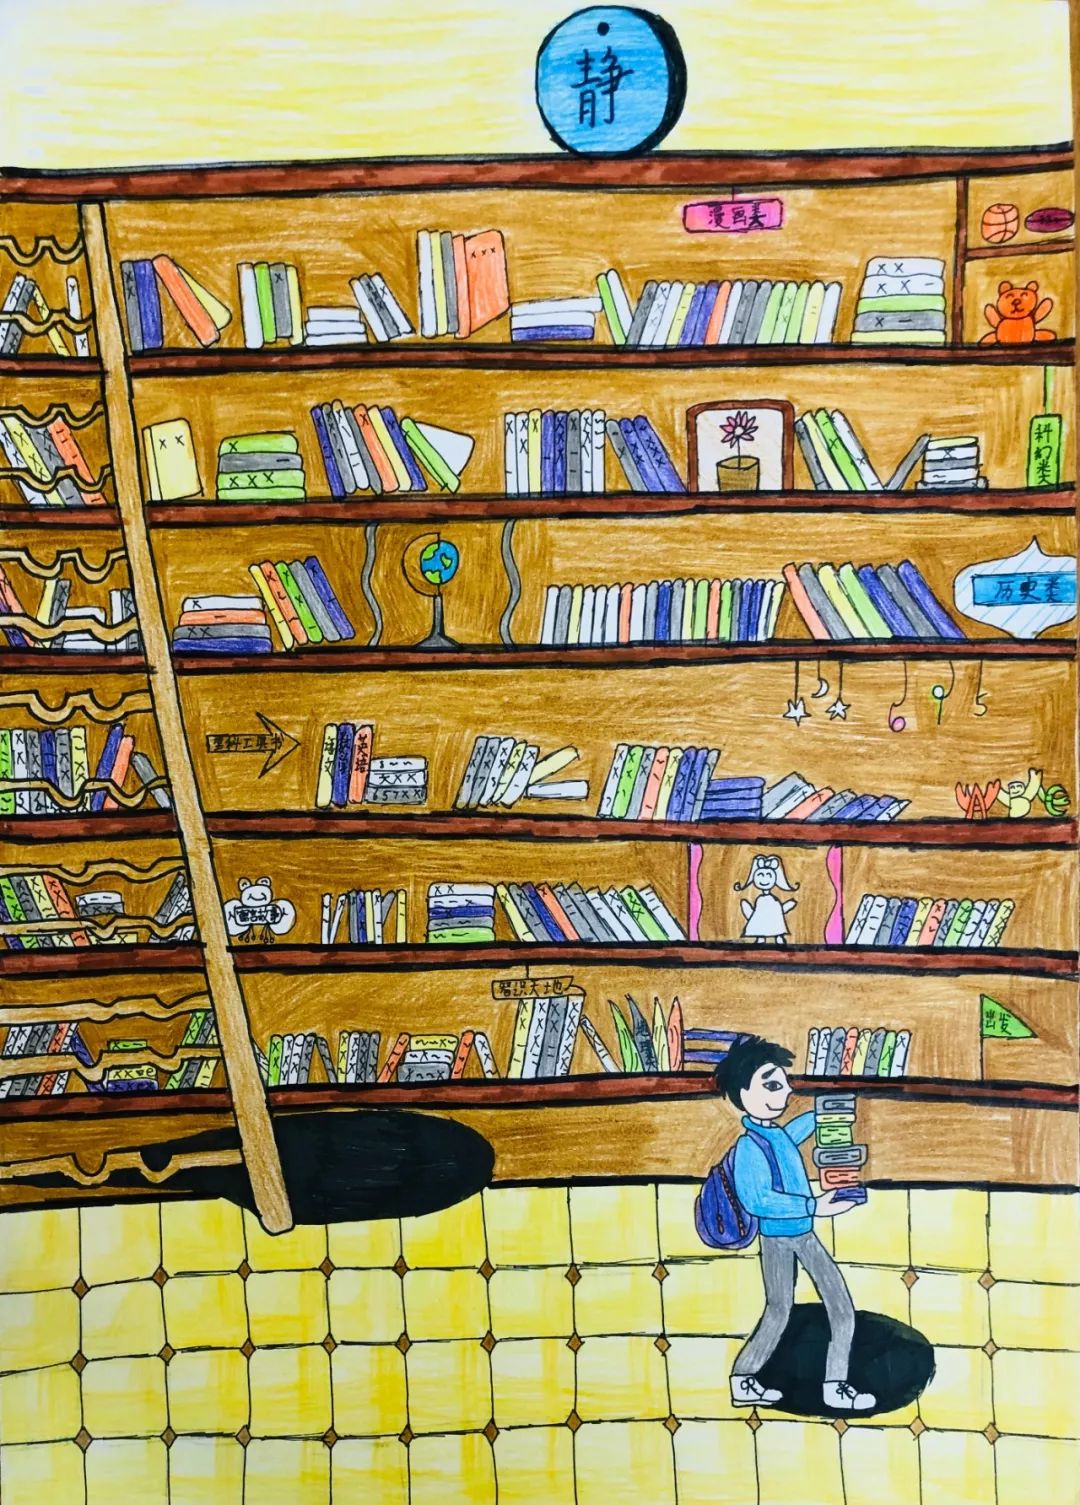 绘画作品,充分发挥了天马行空的想象力,描绘出了心中对少儿图书馆的